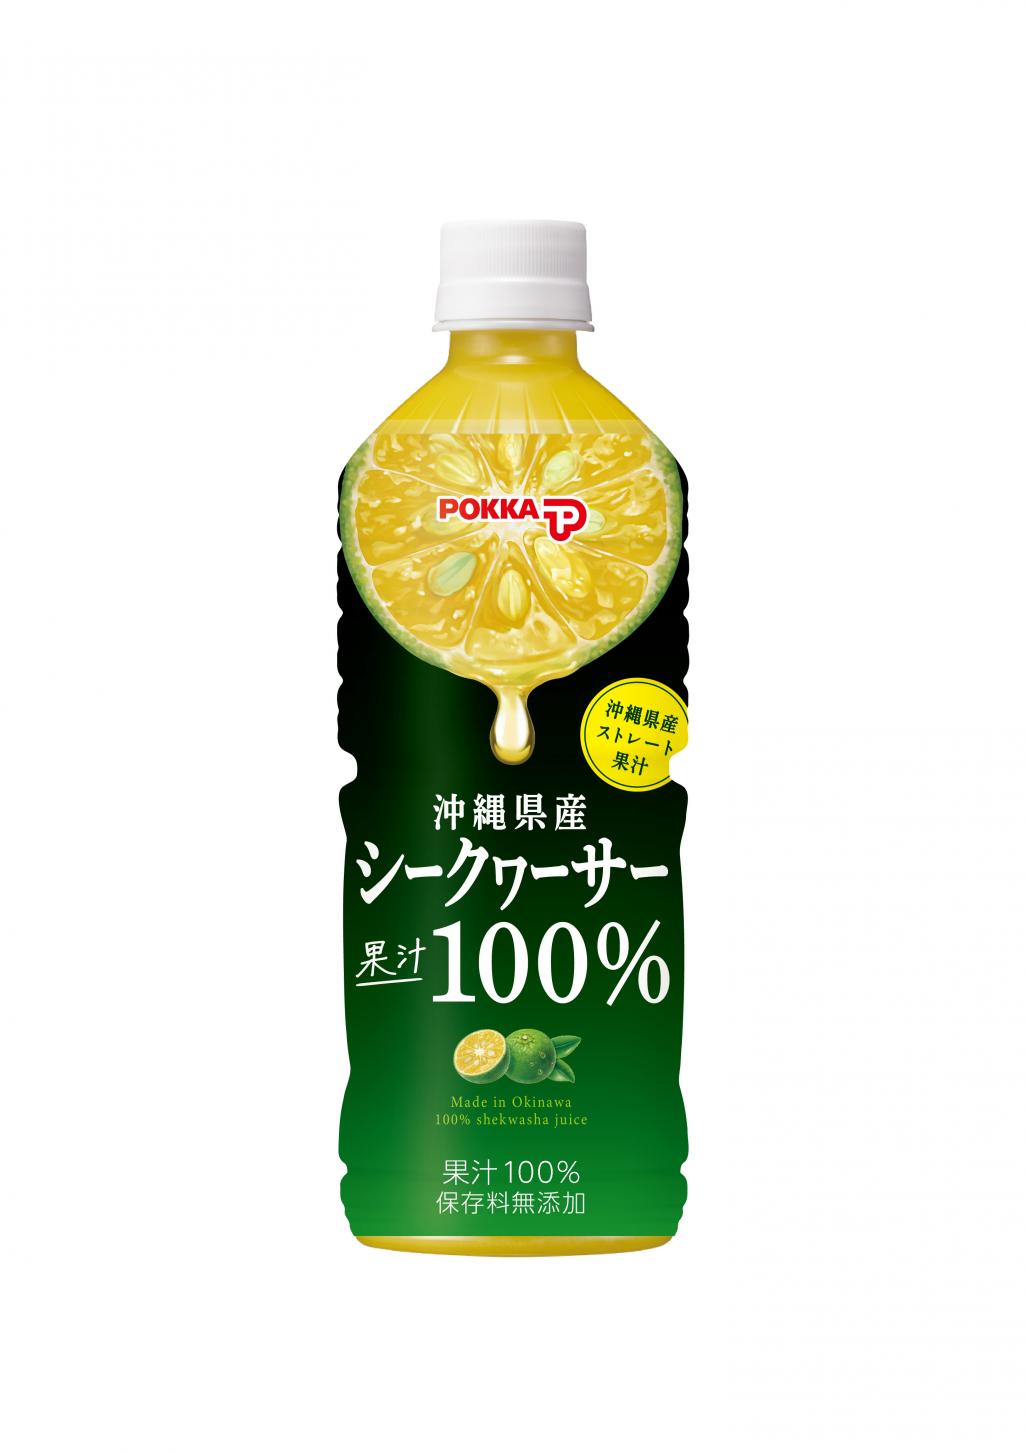 沖縄シークヮーサー果汁100%595mlPET